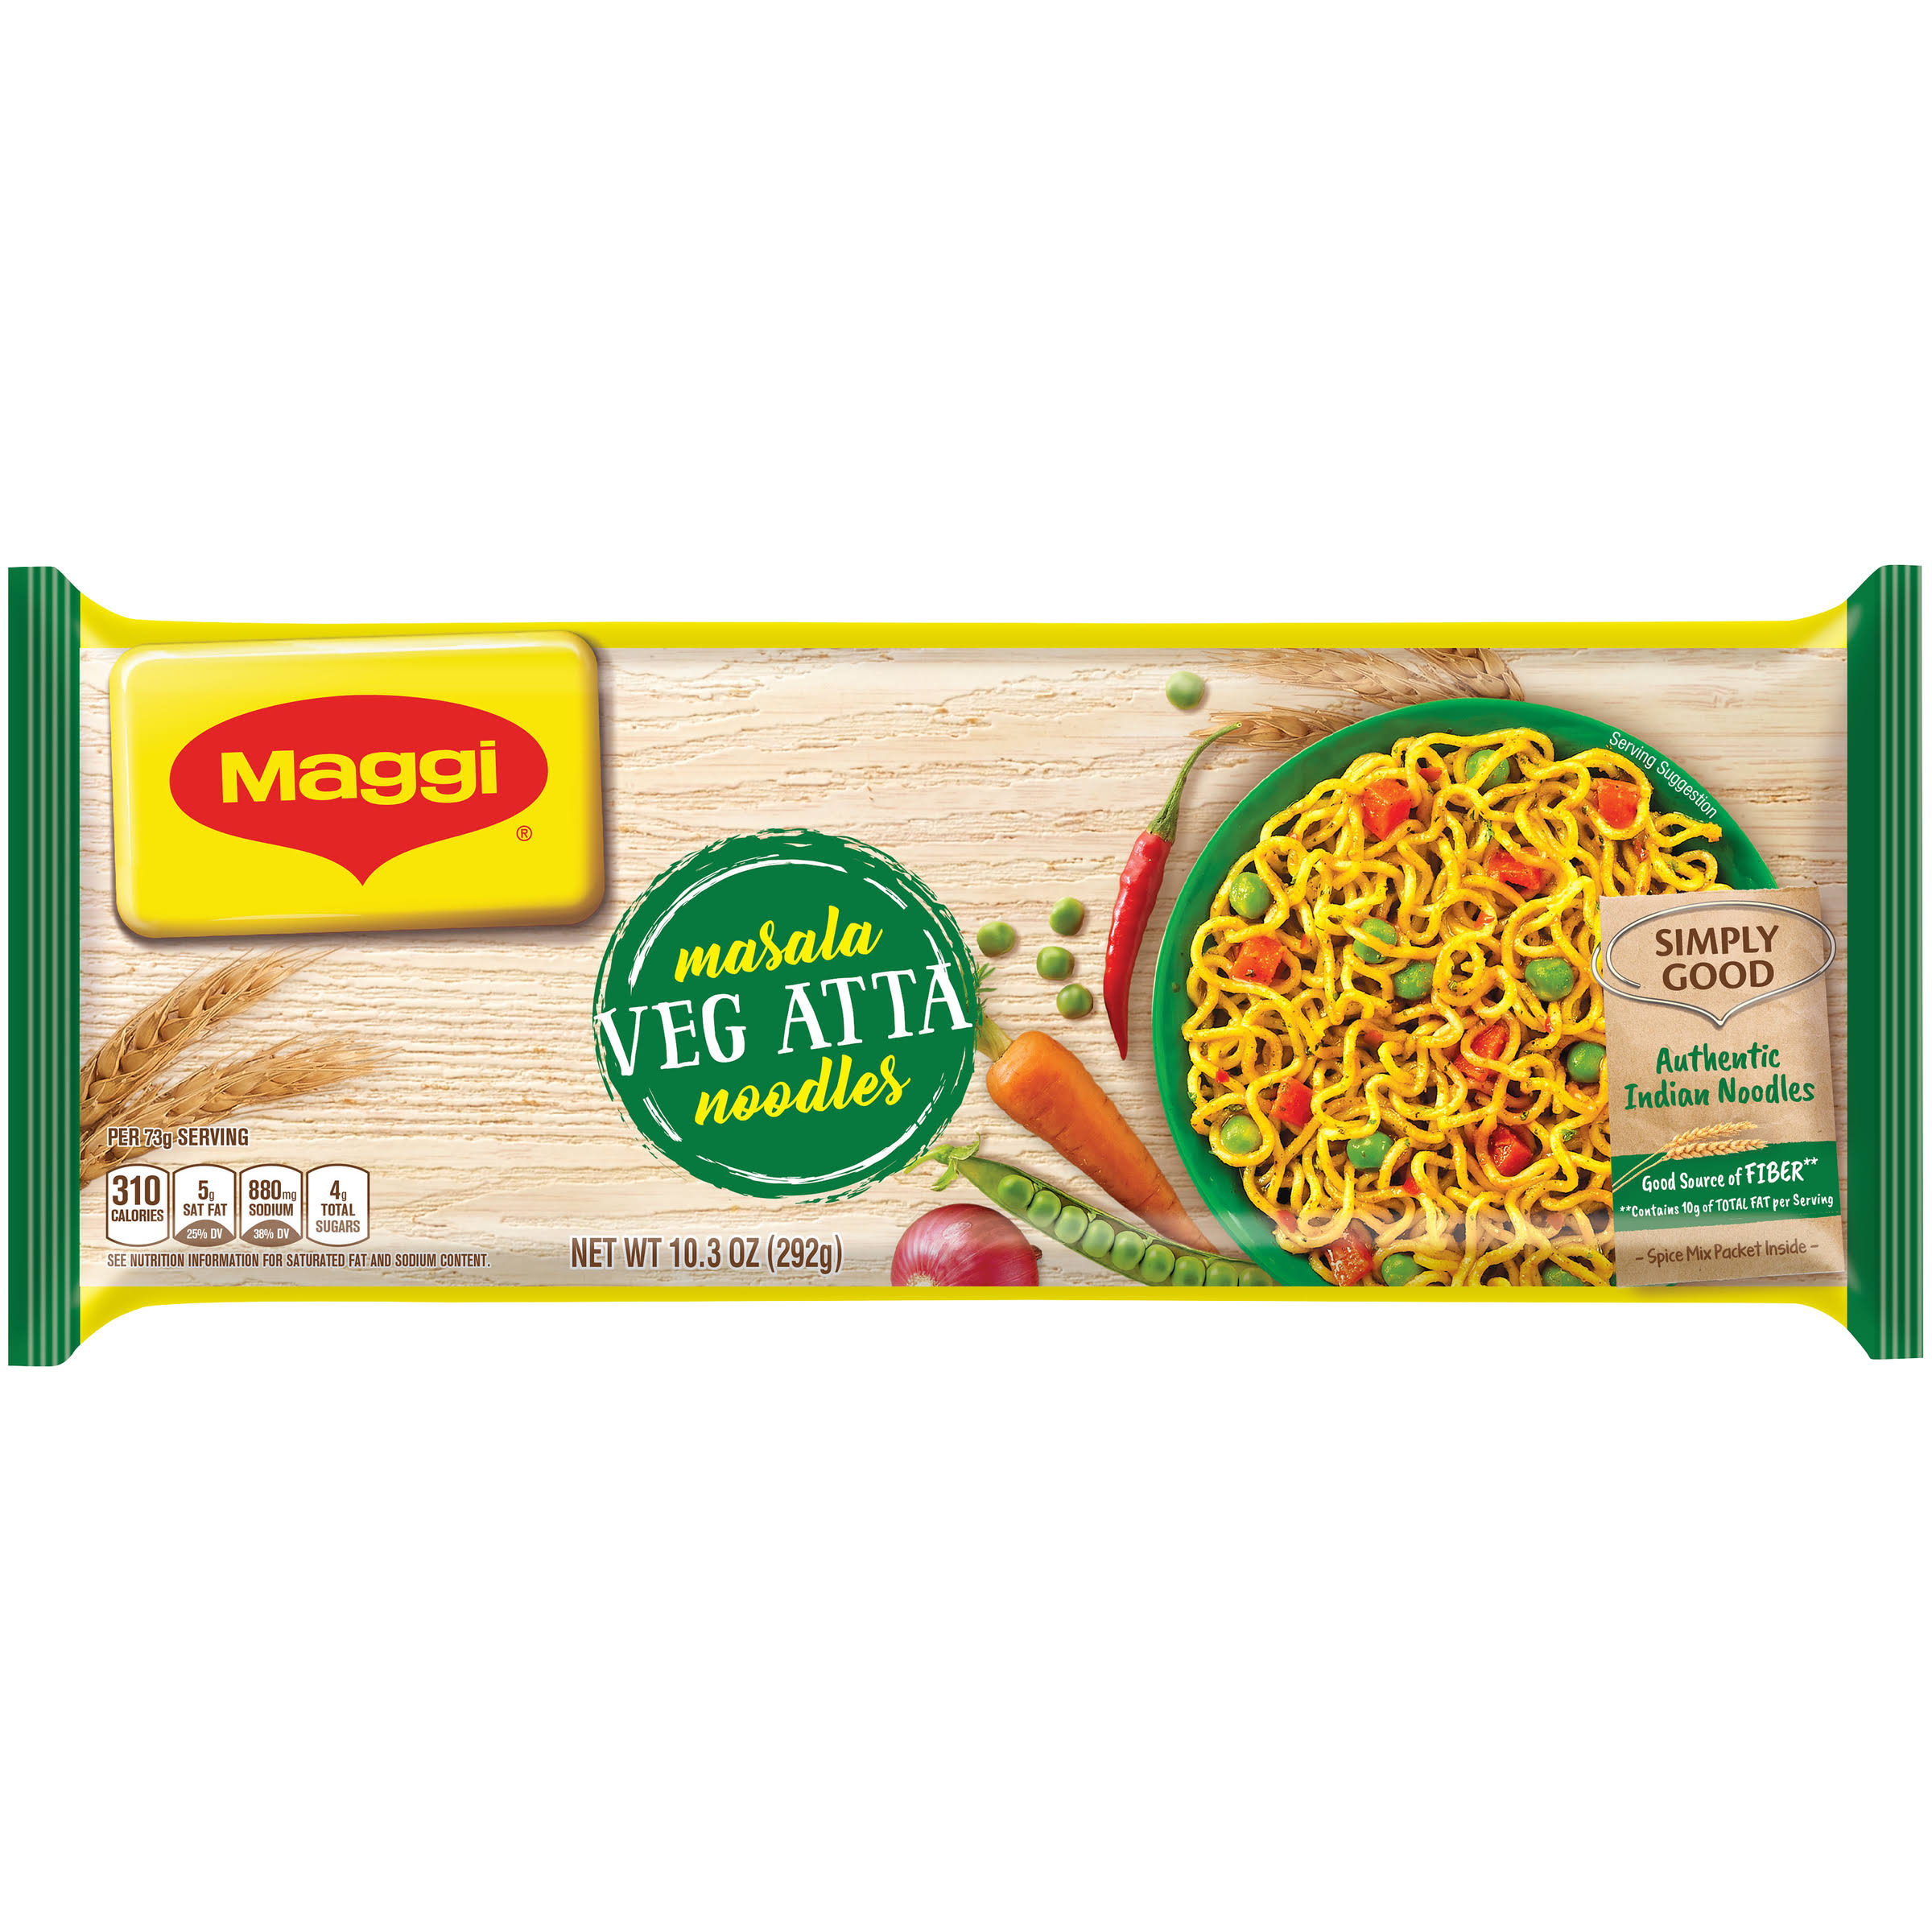 Maggi Noodles, Veg Atta, Masala - 10.3 oz